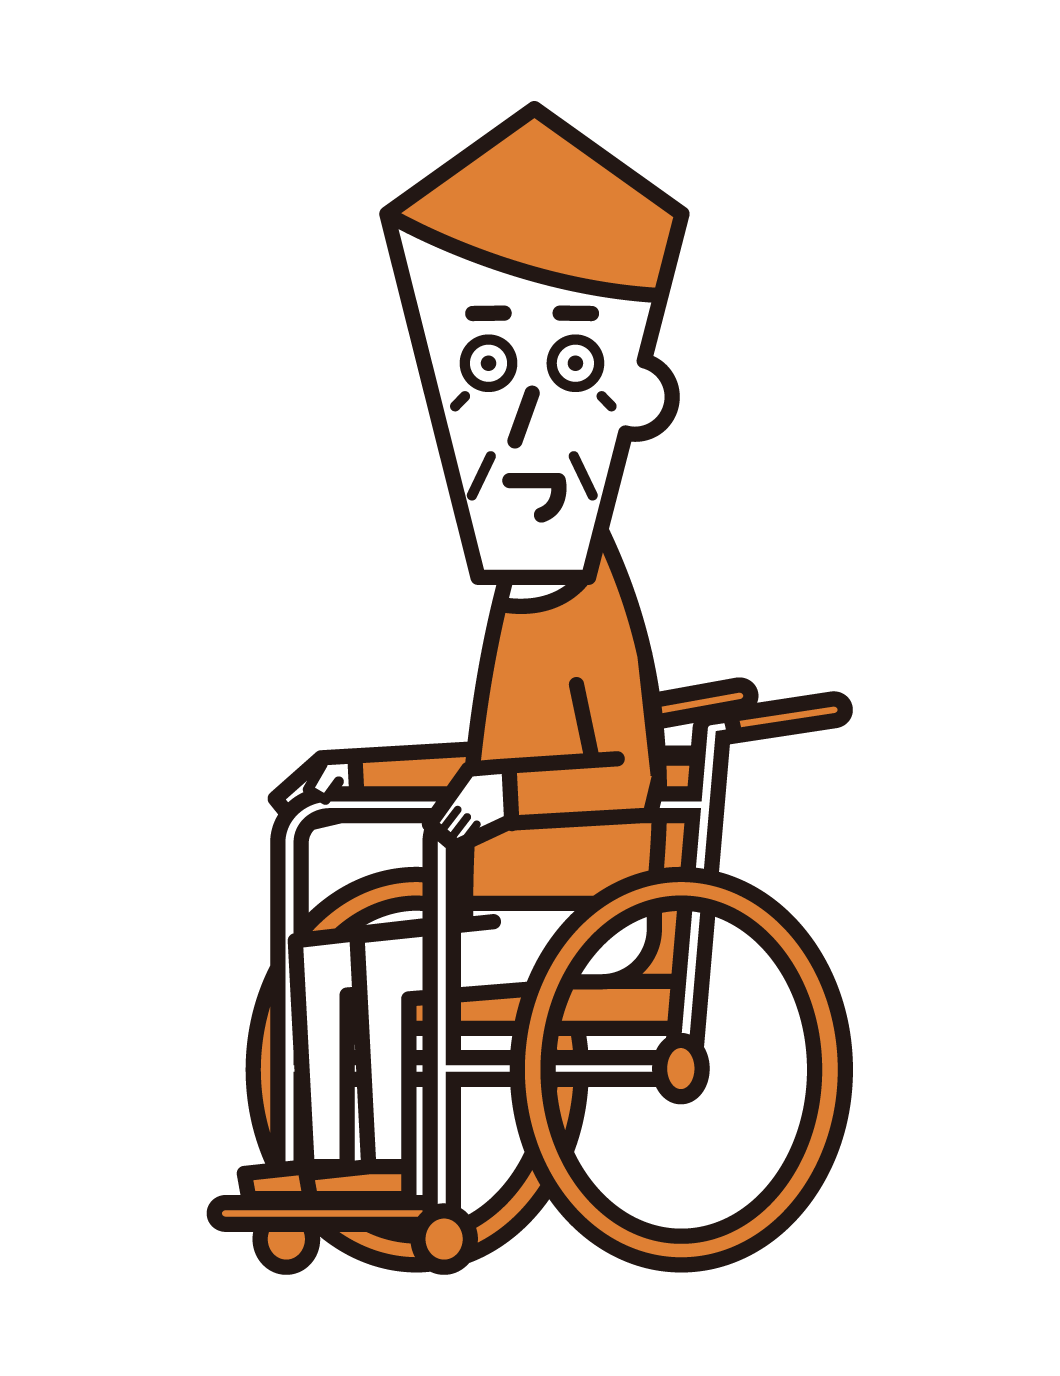 坐在輪椅上的人的插圖